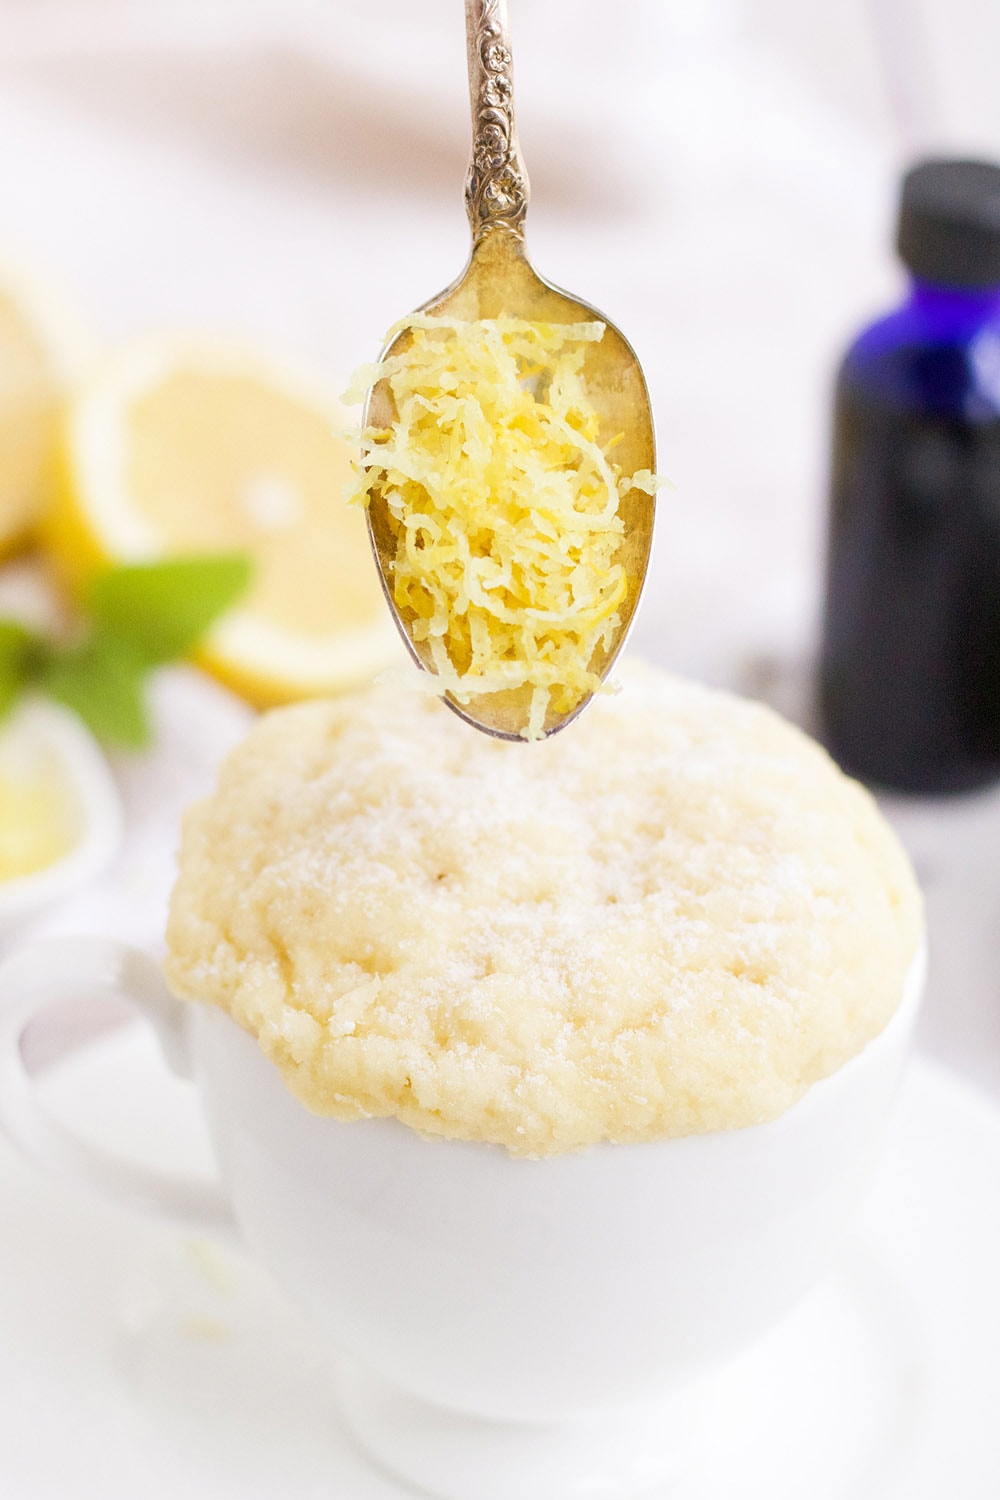 Lemon zest in a spoon over the lemon mug cake.